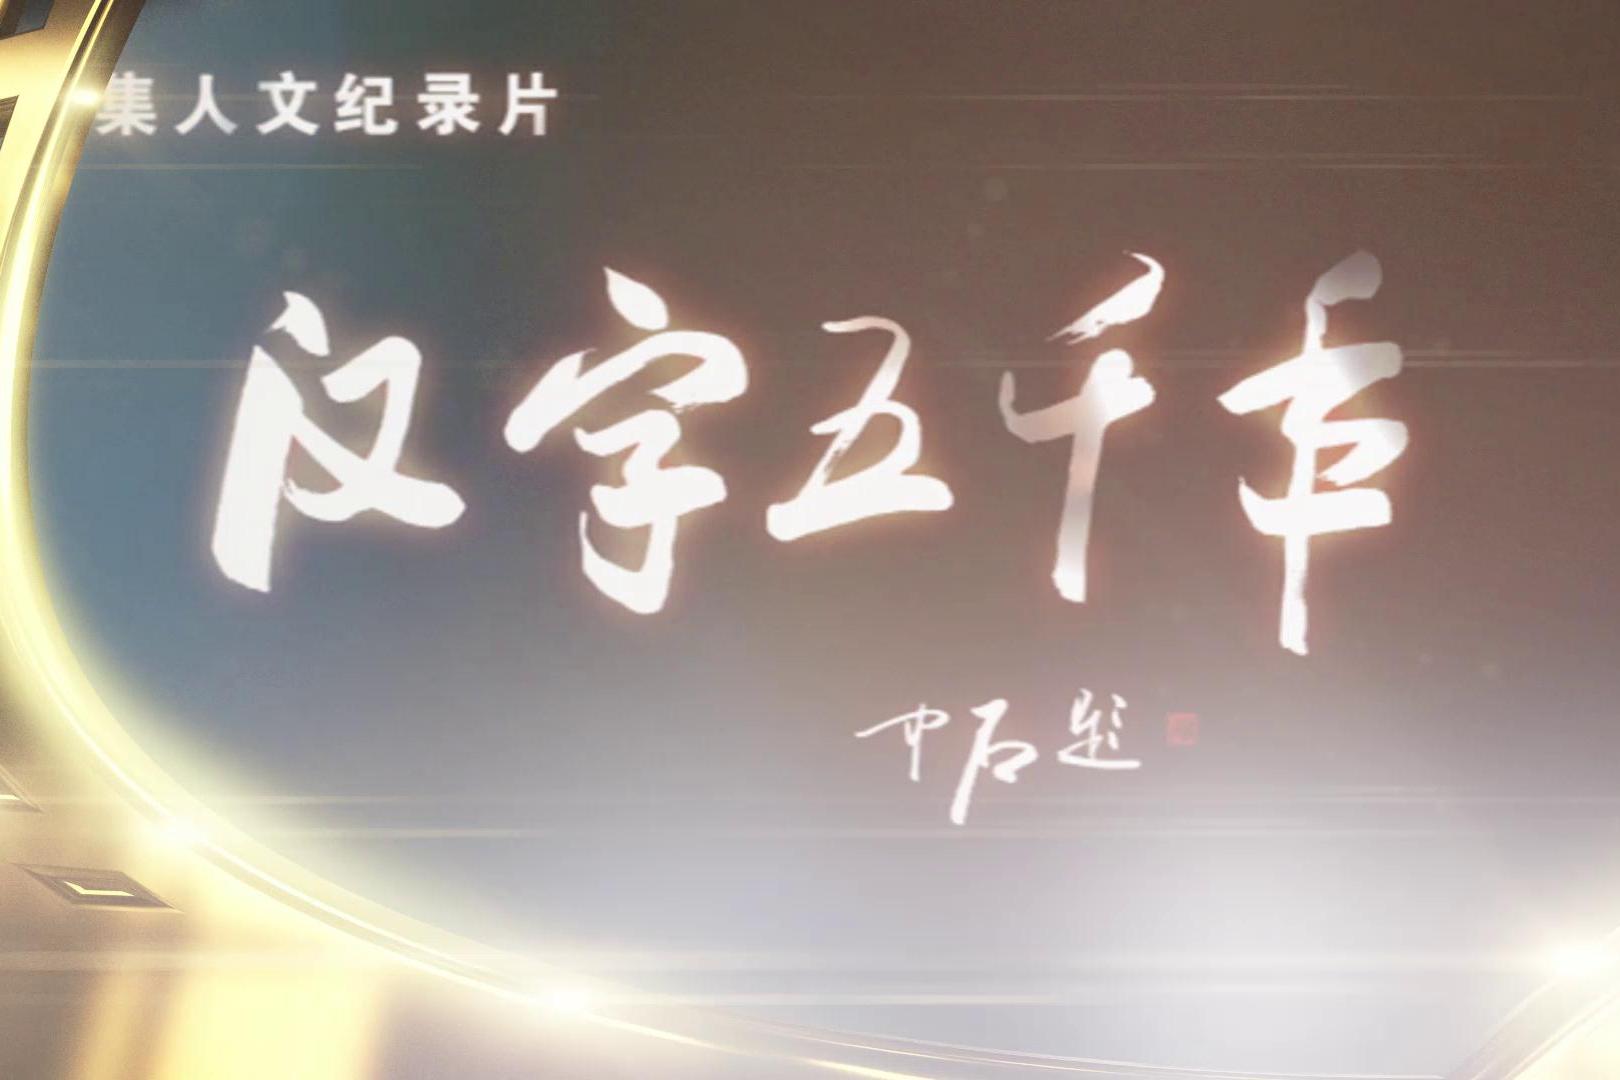 漢字五千年(電視紀錄片)